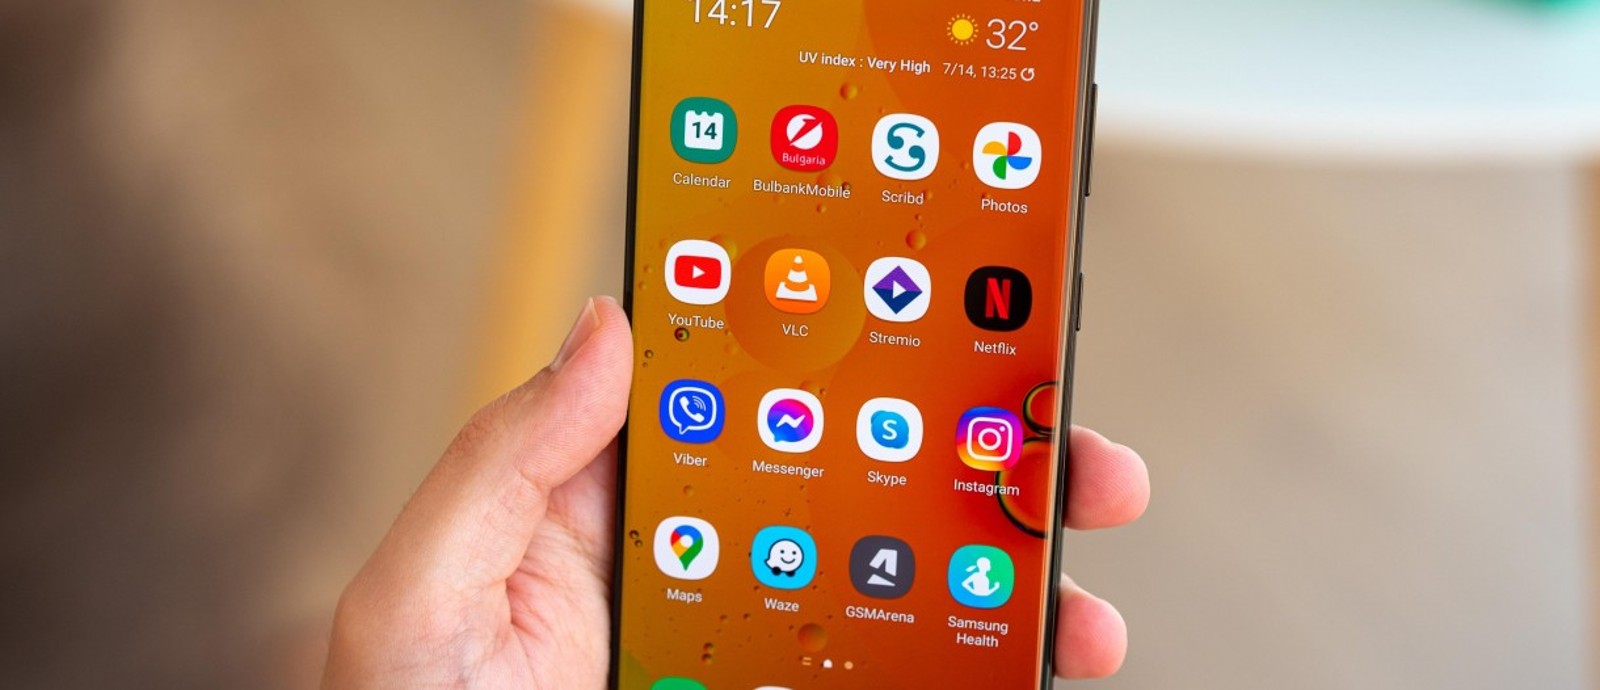 Samsung: Συνεχίζει την κυκλοφορία του One UI 4 μετά τη διόρθωση σφαλμάτων